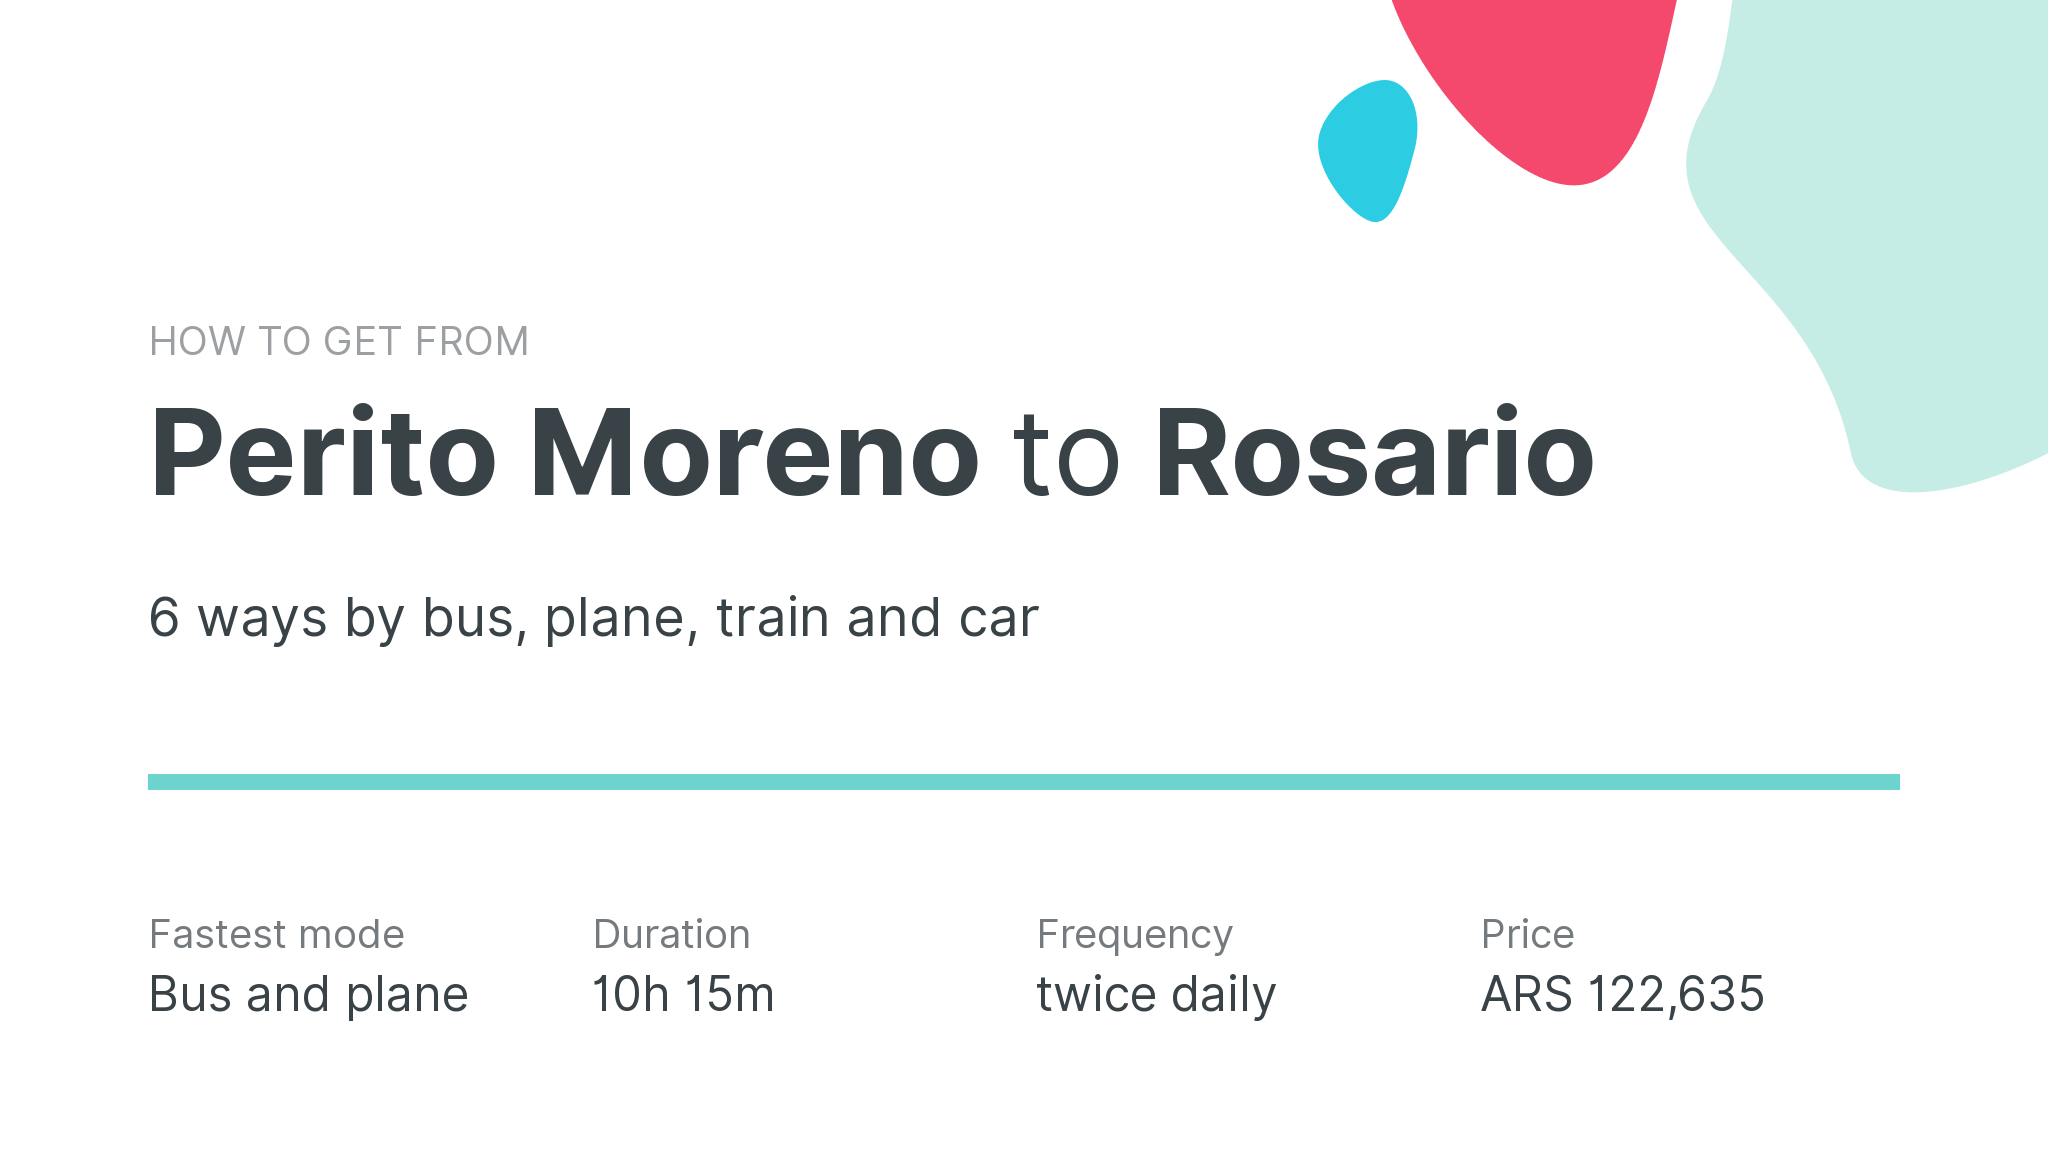 How do I get from Perito Moreno to Rosario